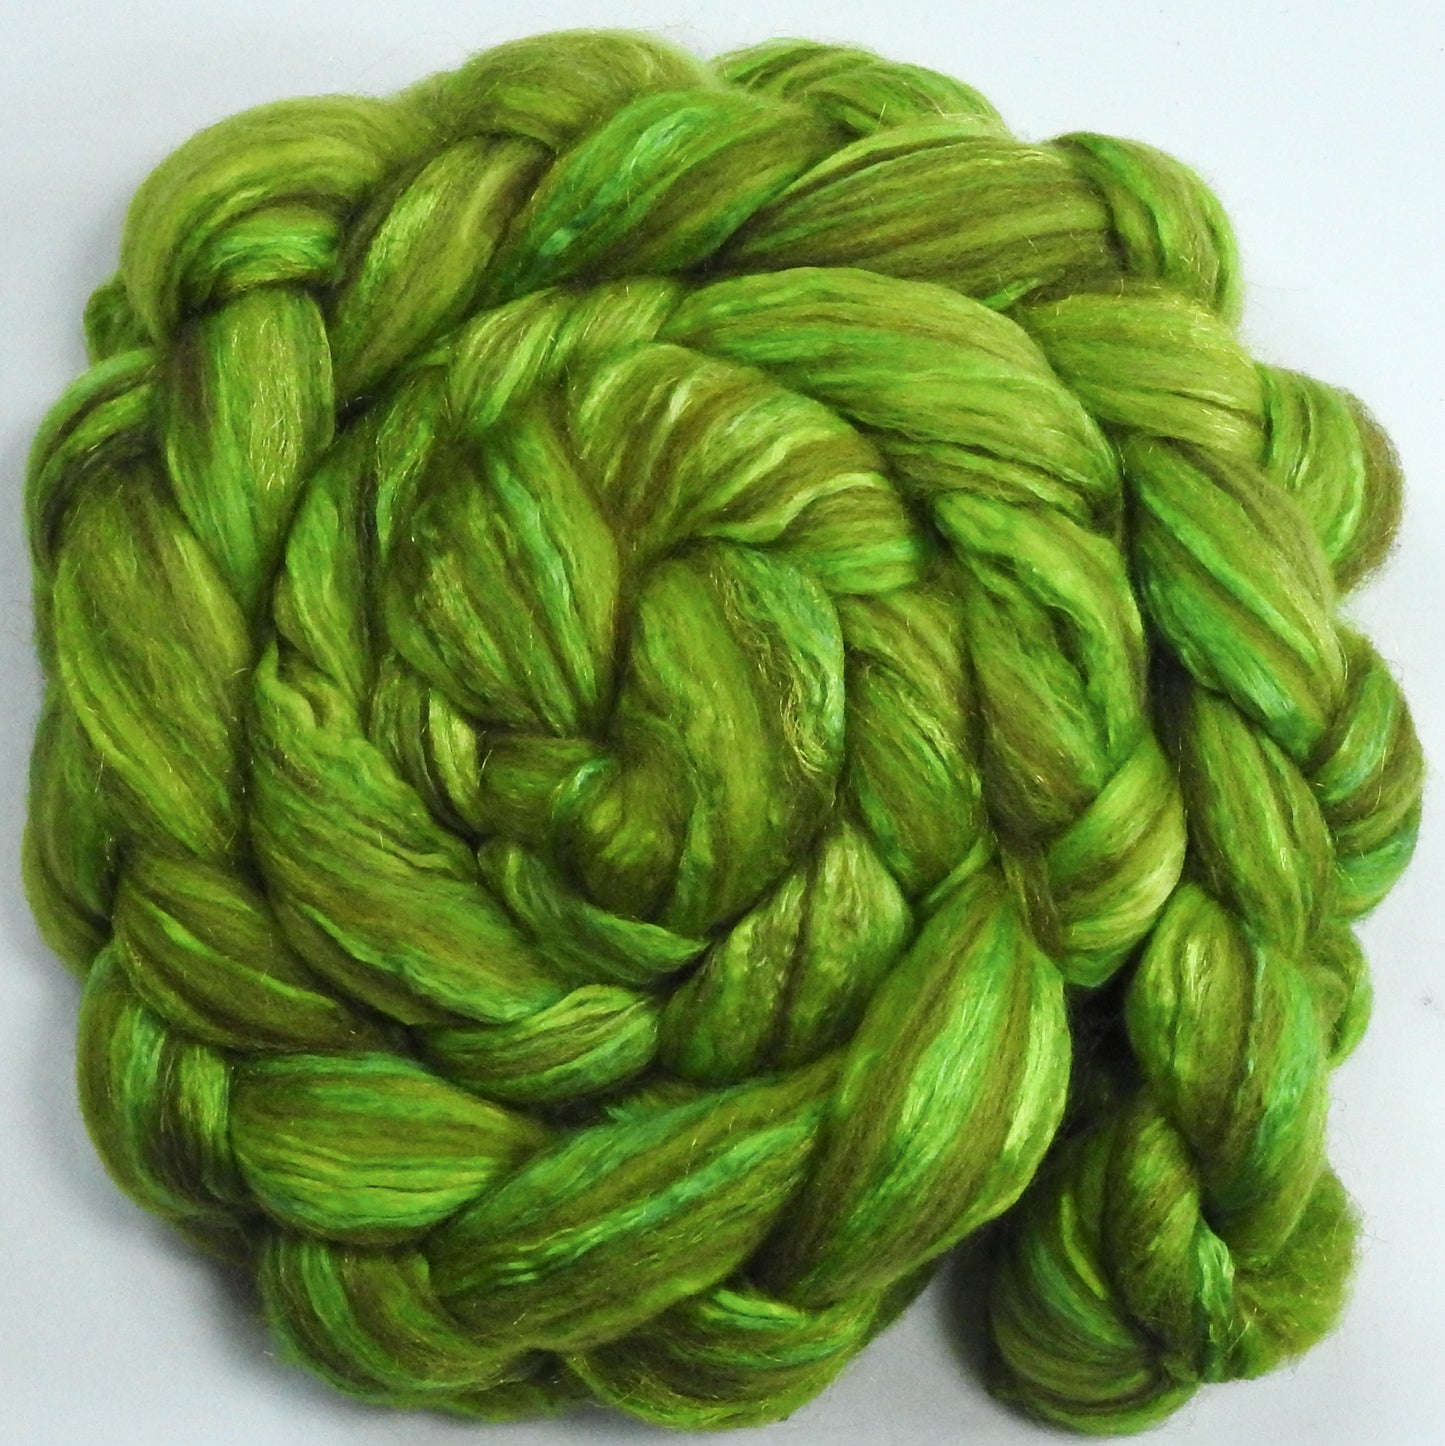 Tree Frog (5.6) - Batt in a Braid #7 - Polwarth/ Manx / Mulberry silk/ Firestar (30/30/30/10)